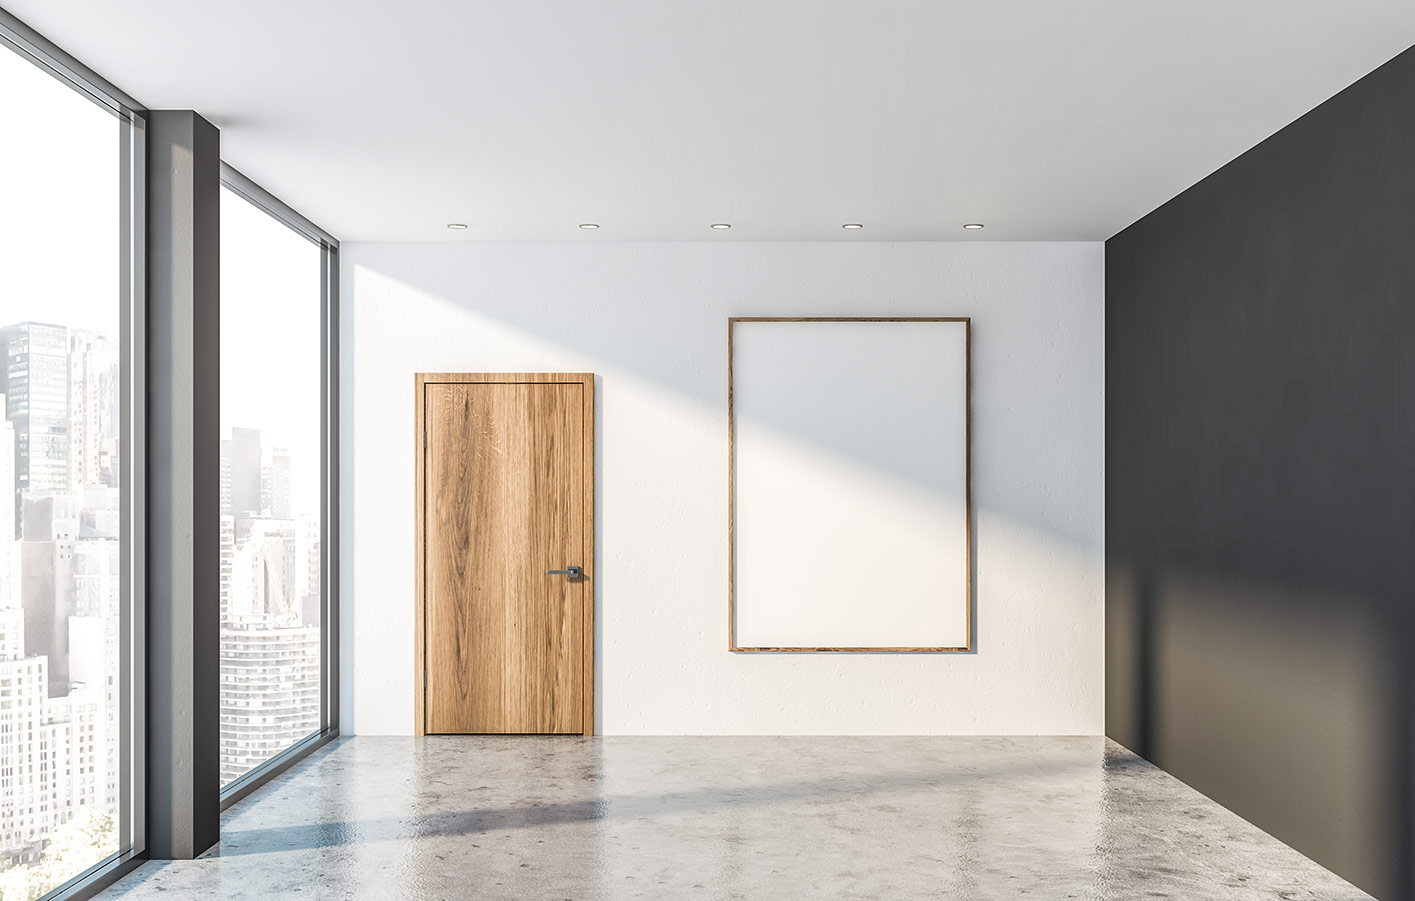 Holztür in einem leeren modernen Raum